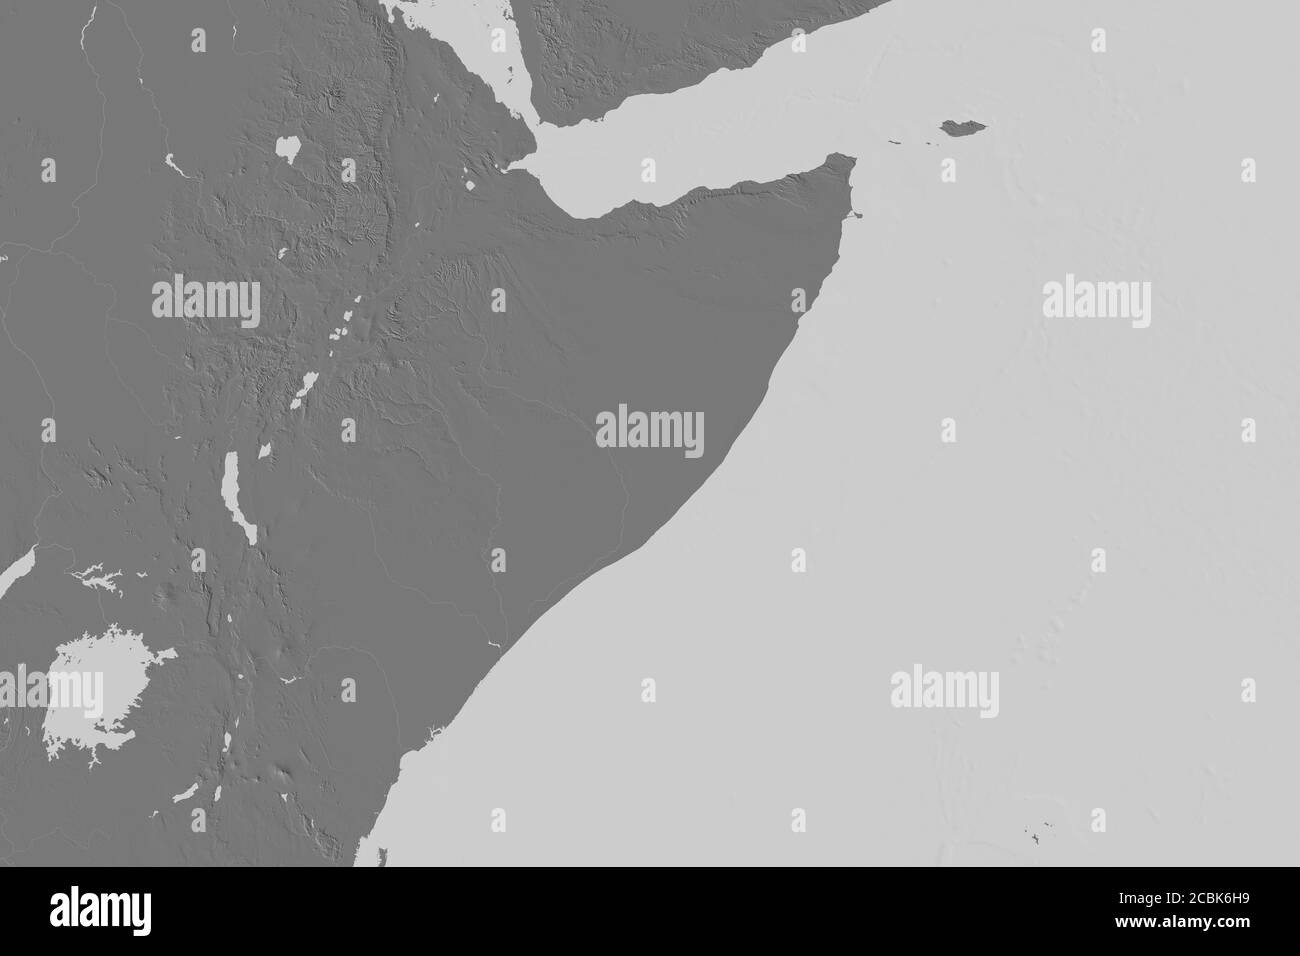 Zone étendue de la Somalie. Carte d'élévation à deux niveaux. Rendu 3D Banque D'Images